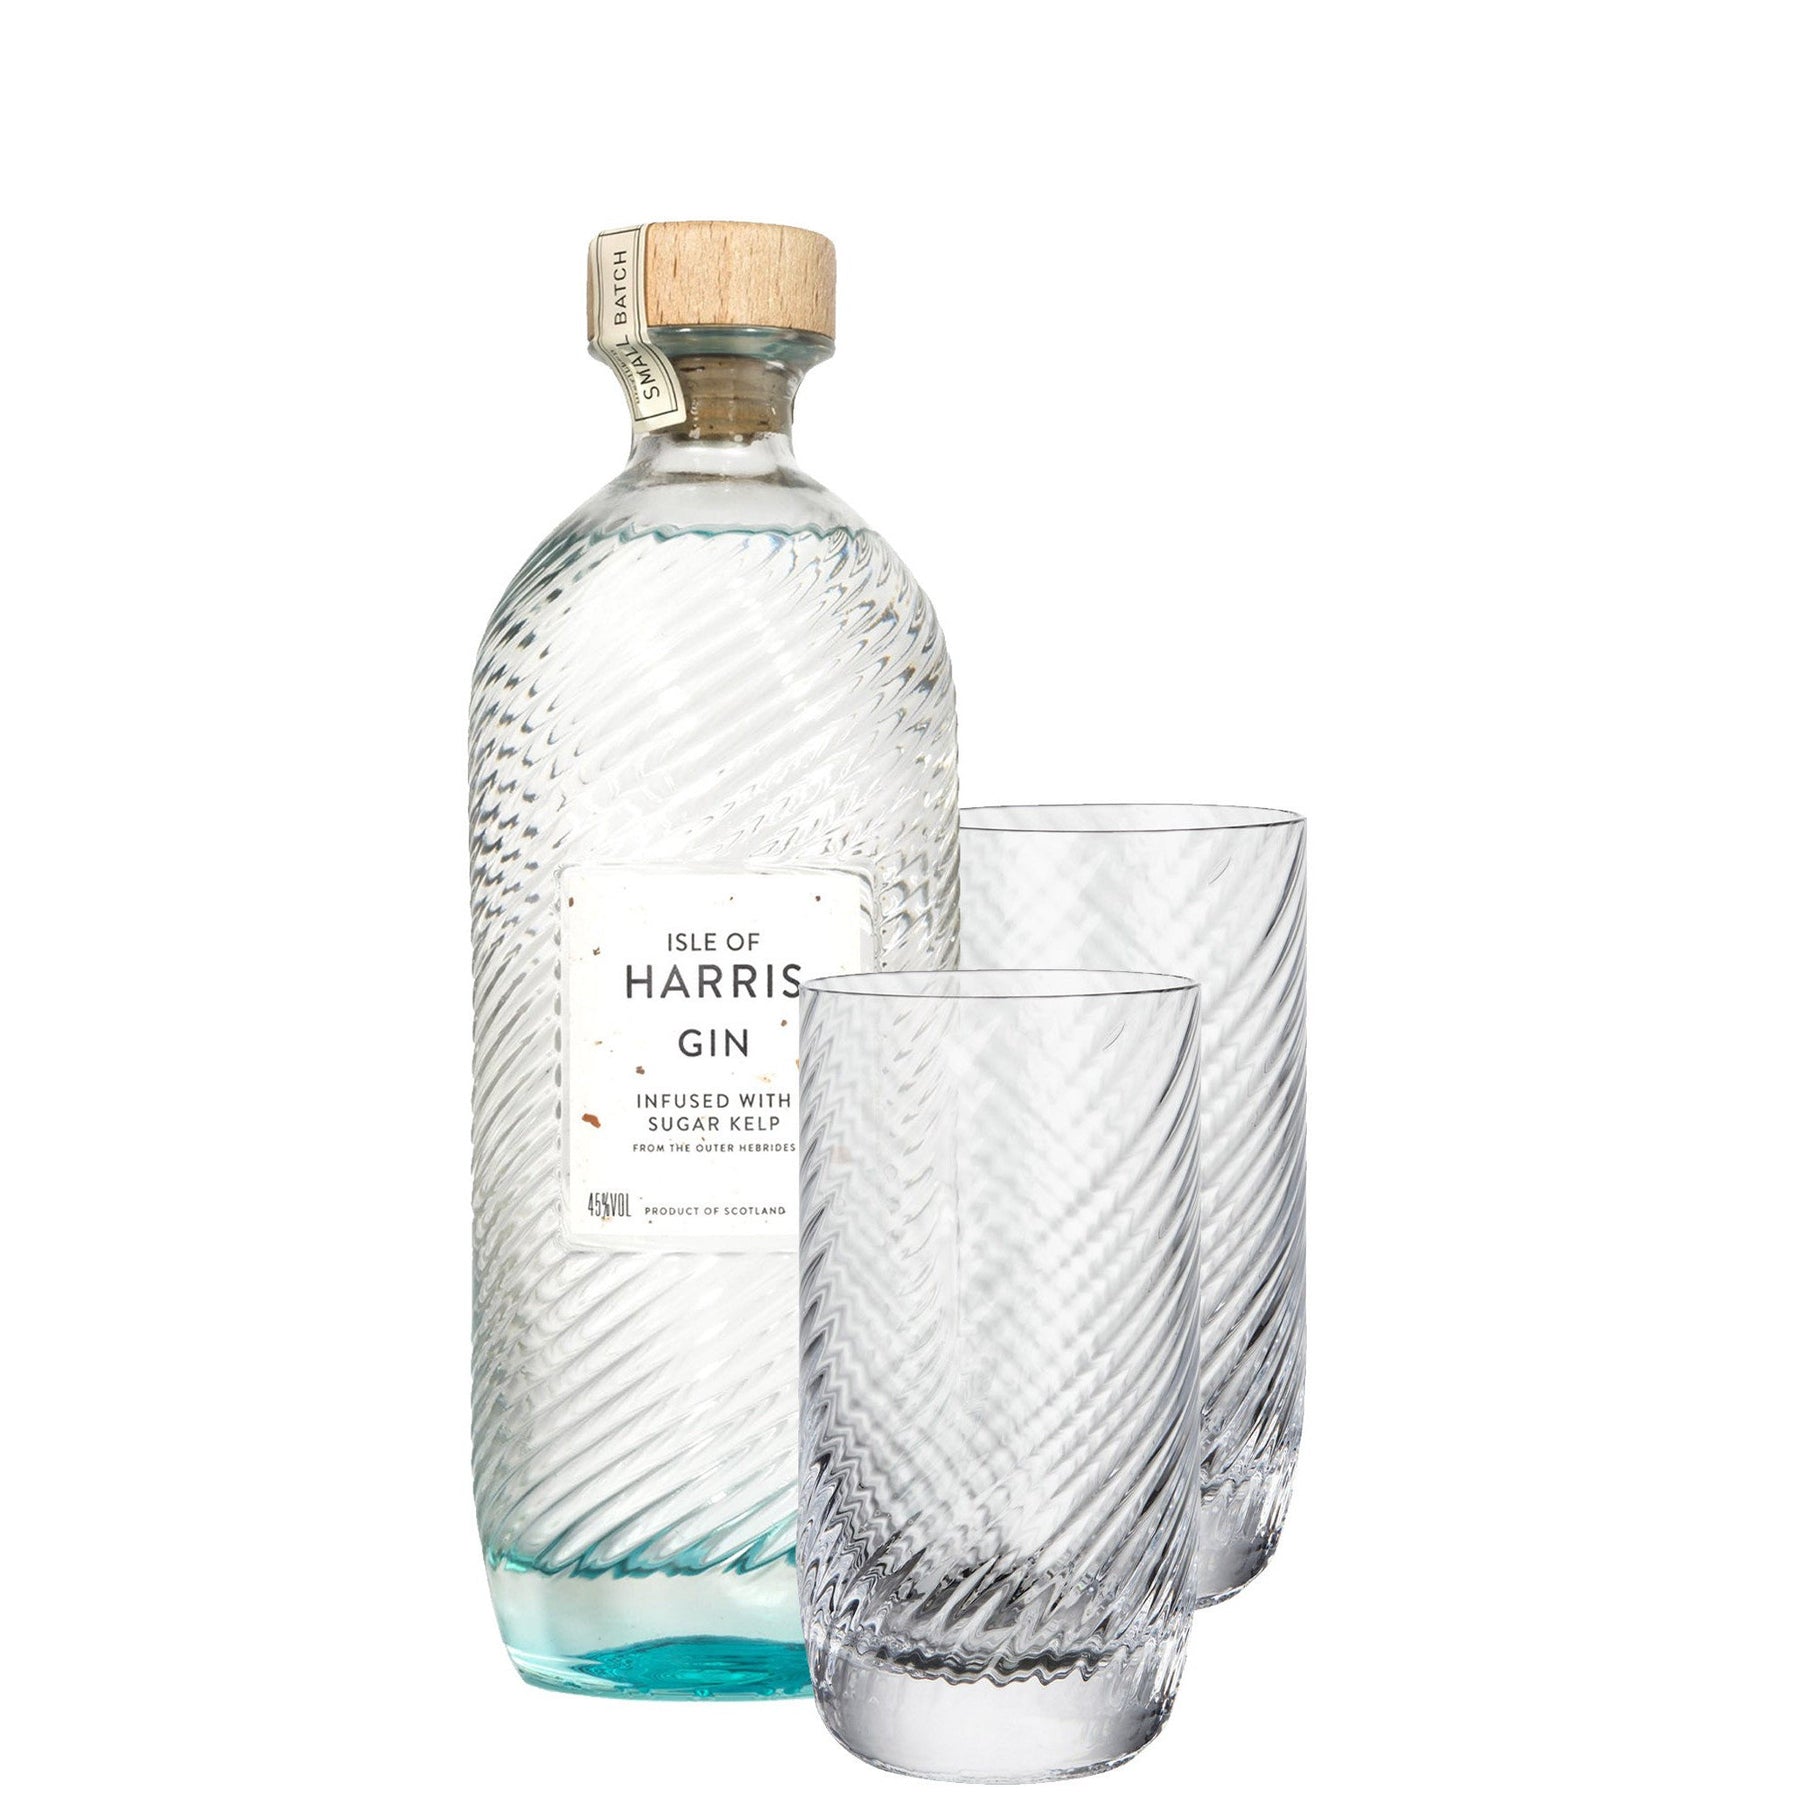 Isle of Harris Gin & Highball Glass Gift Set 700ml